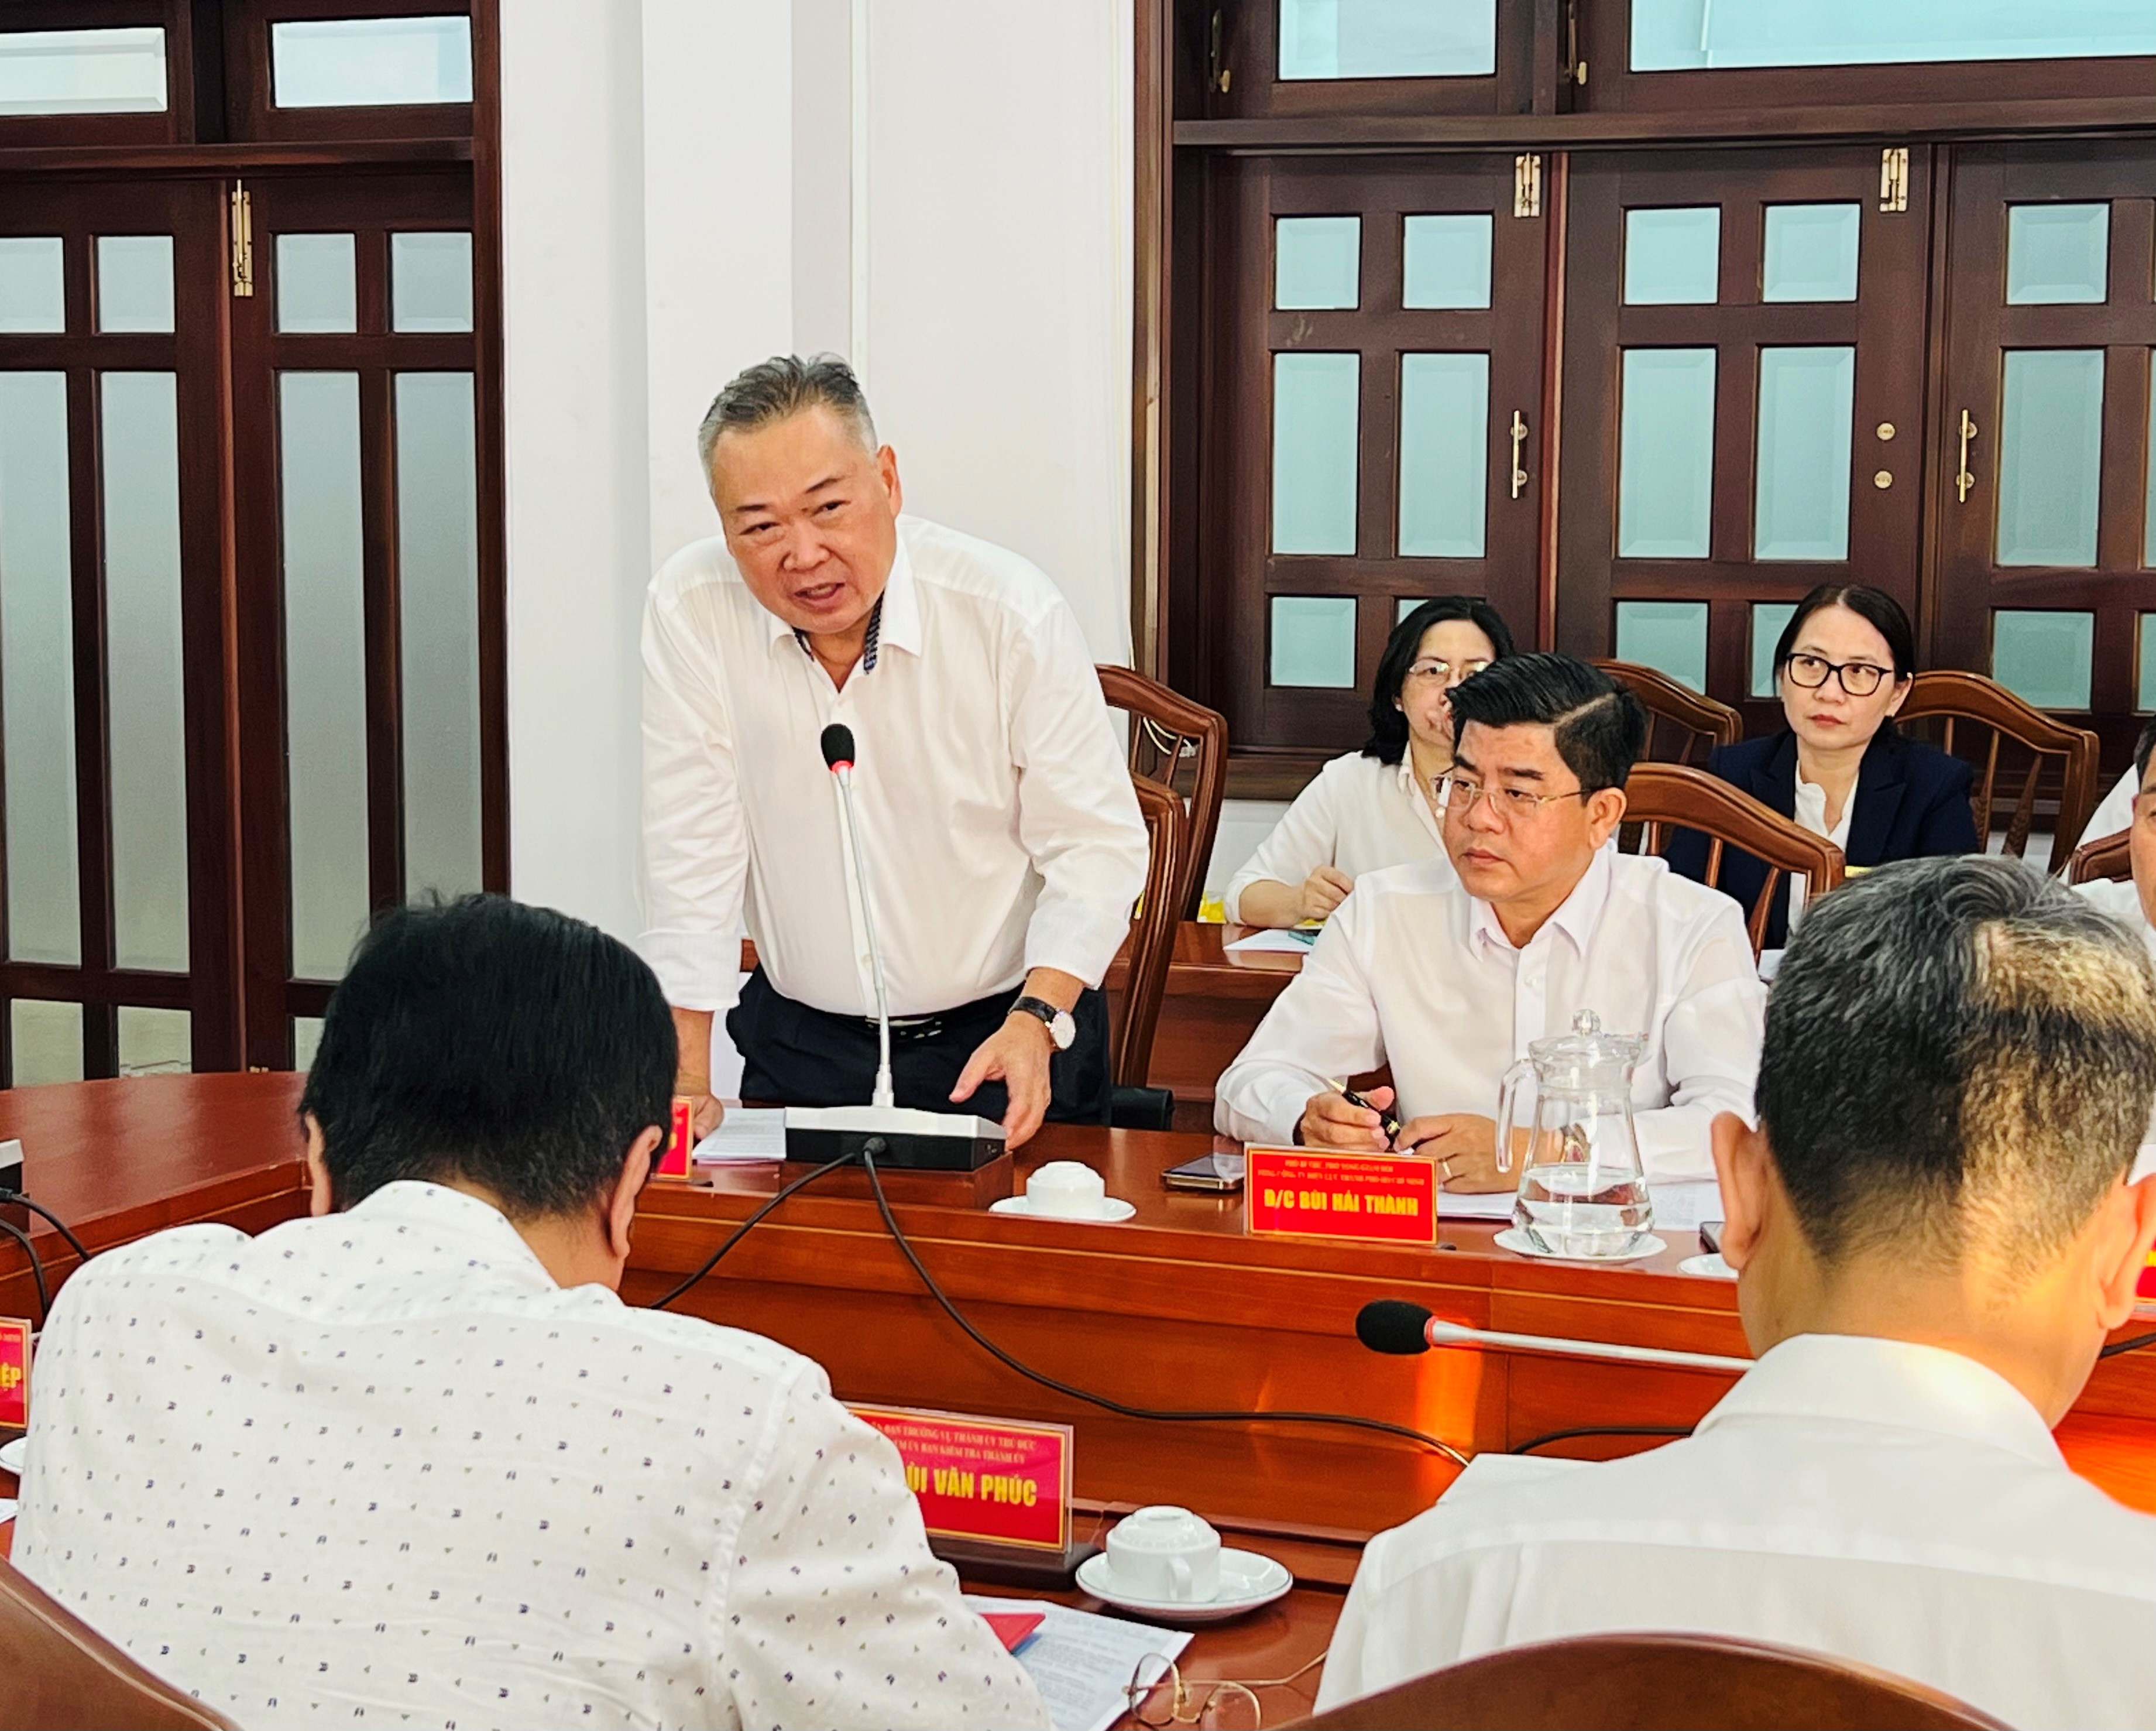 Đồng chí Phạm Quốc Bảo - Bí thư Đảng ủy, Chủ tịch HĐTV EVNHCMC phát biểu tại buổi làm việc.